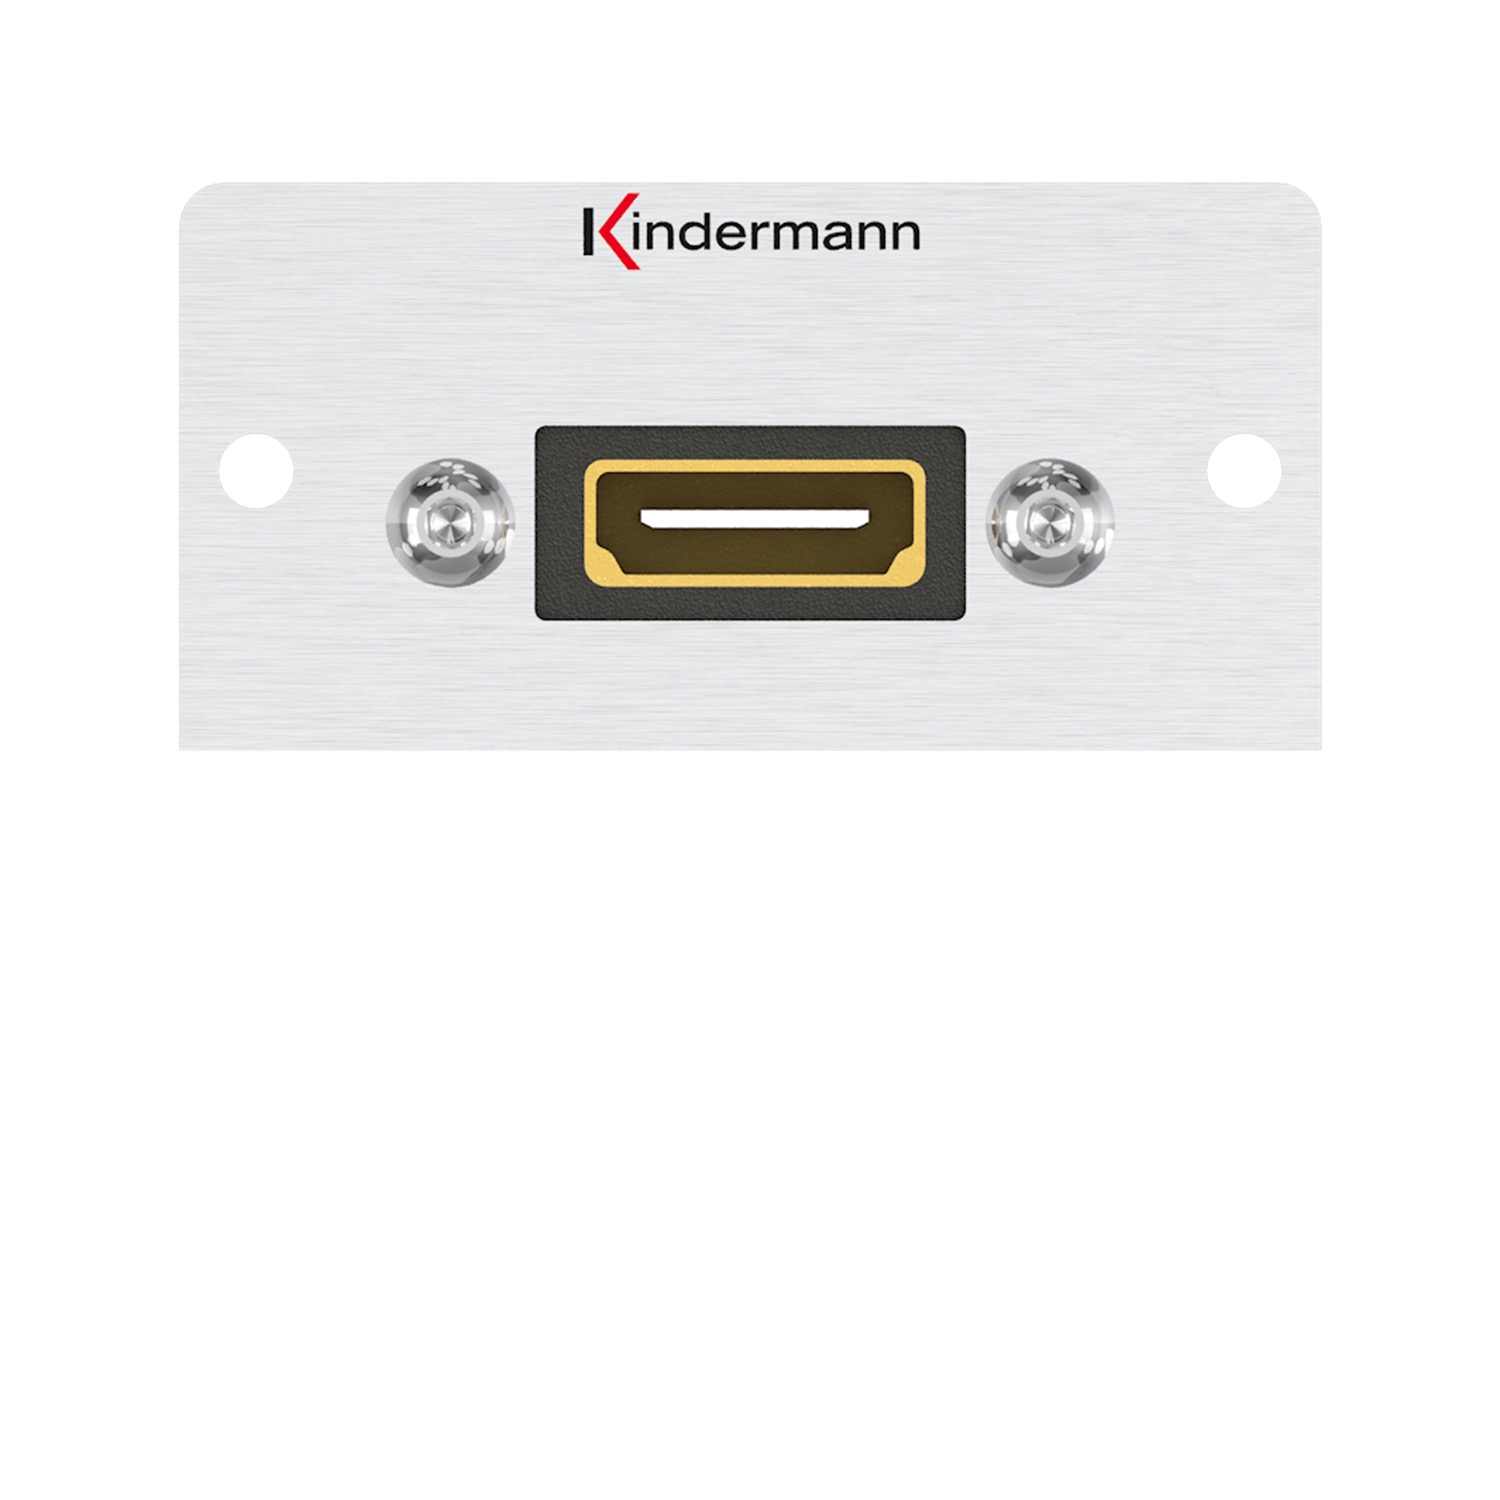 Kindermann Konnect alu 50 - HDMI - Anschlussblende mit Kabelpeitsche, HDMI - Highspeed mit Ethernet, Halbblende, Aluminium eloxiert